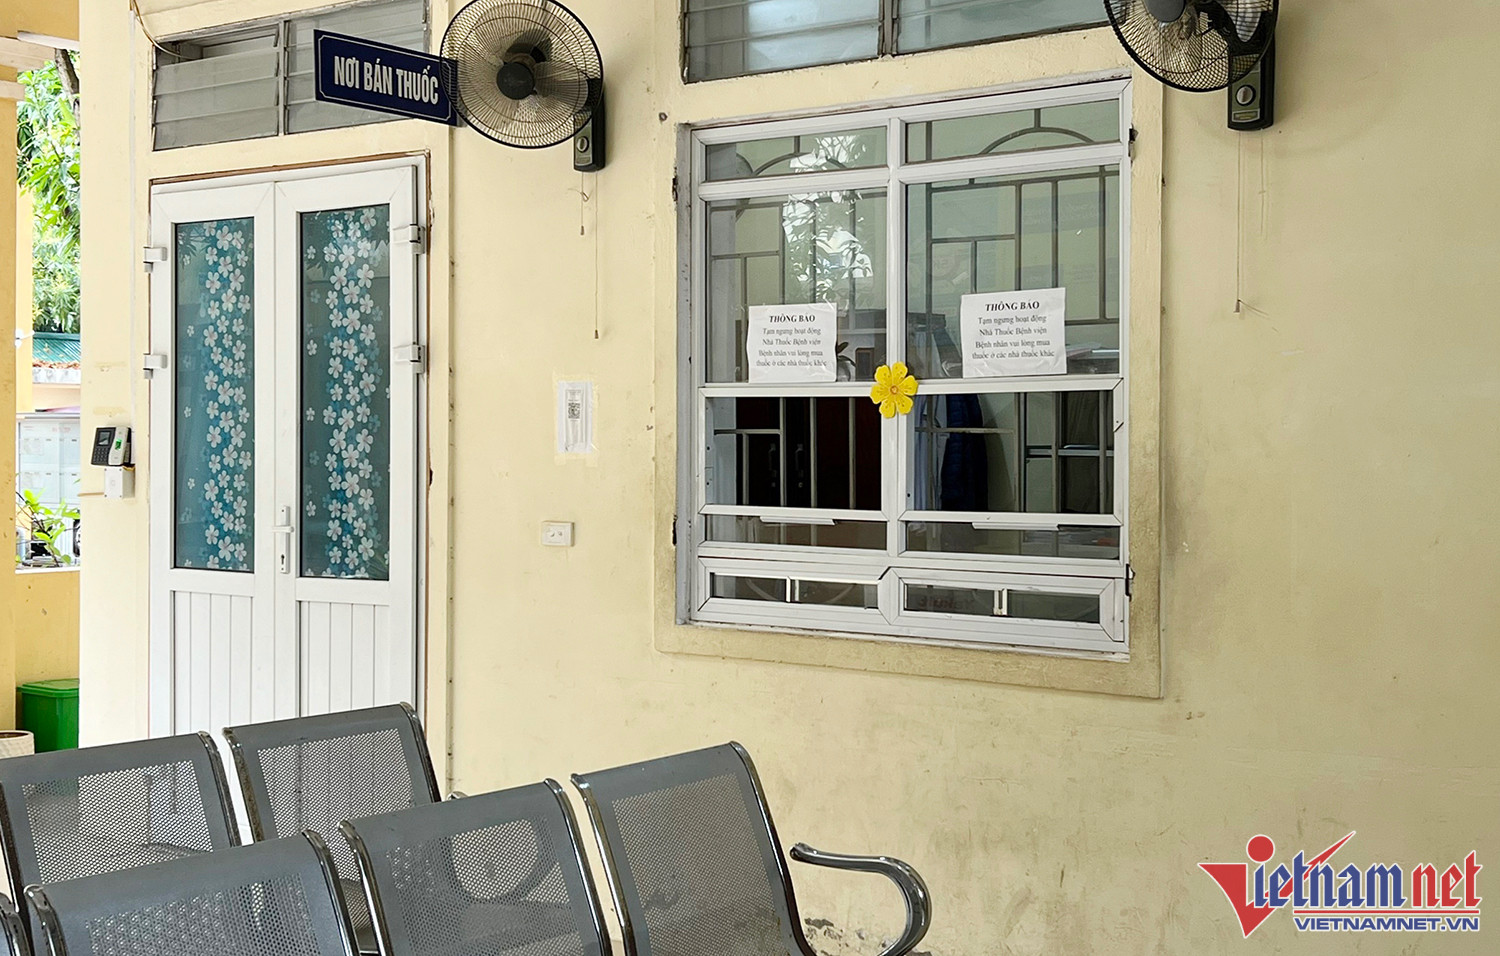 Nhà thuốc Bệnh viện Da Liễu Nghệ An đóng cửa vì nhân viên nghỉ việc